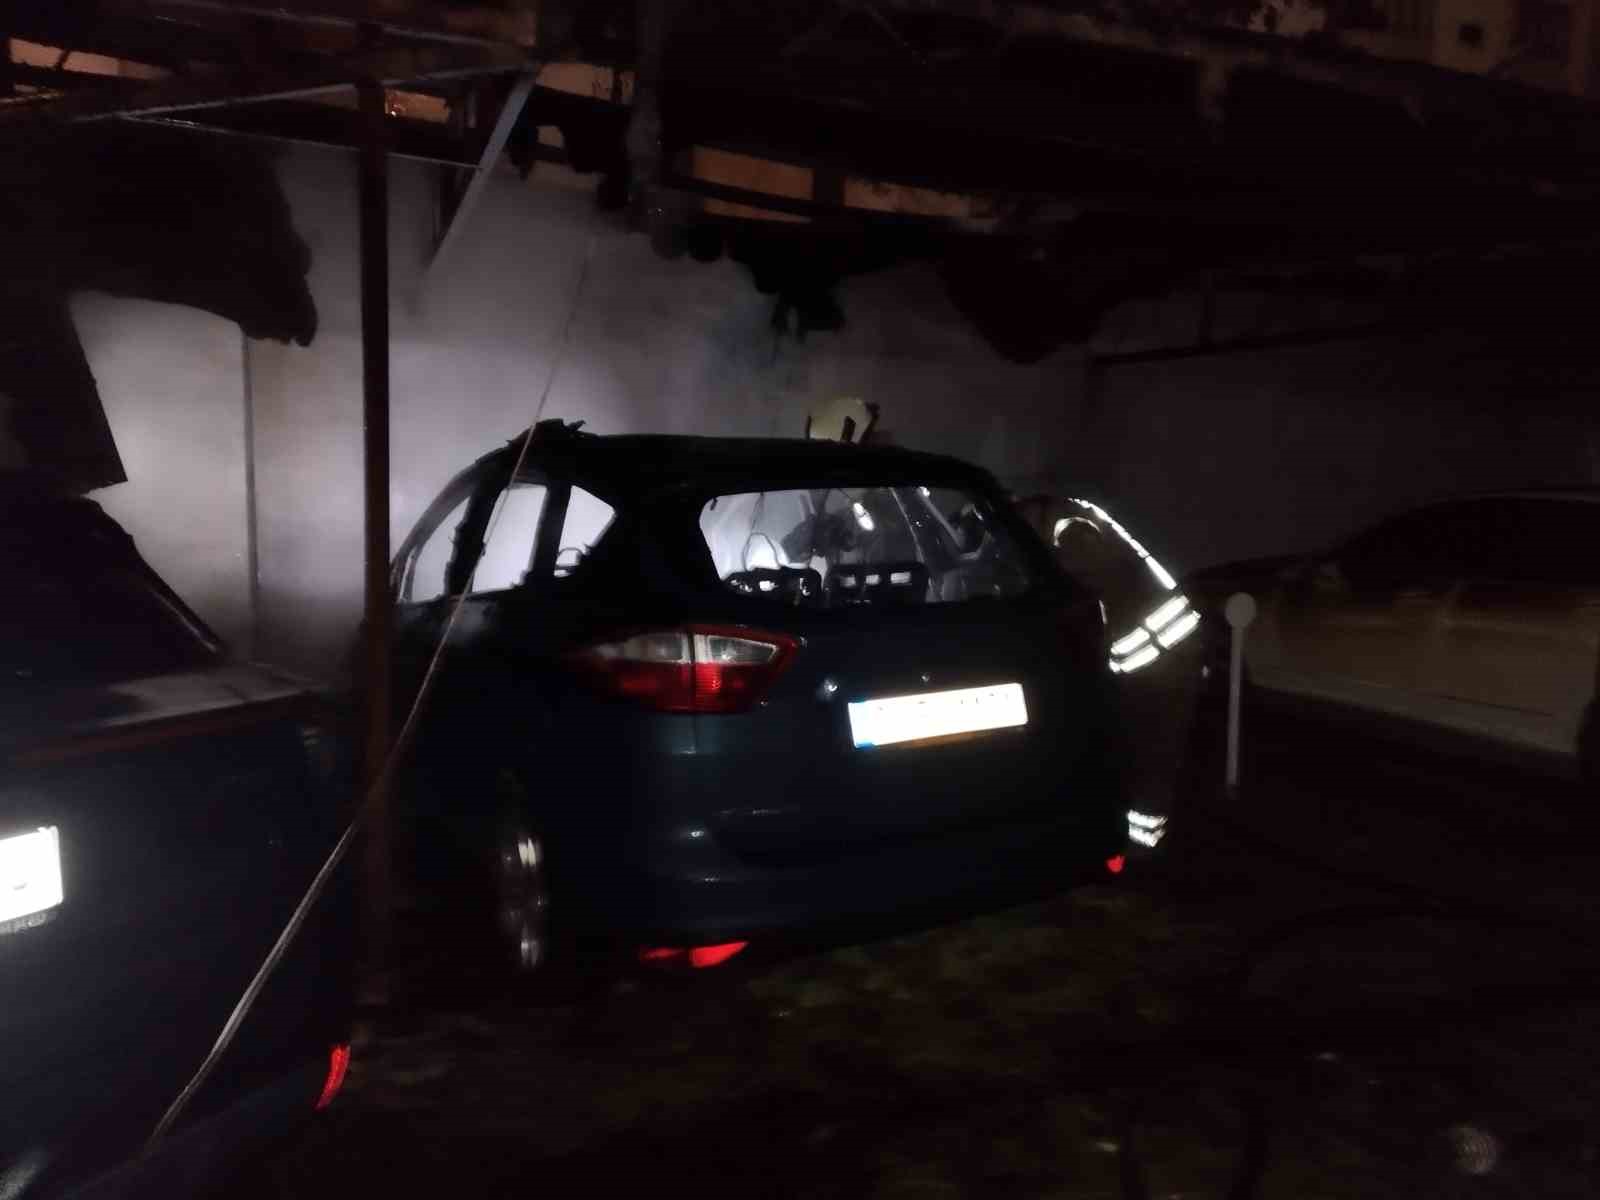 Kadıköy’de bir apartmanın otoparkında bulunan araç alev topuna döndü
